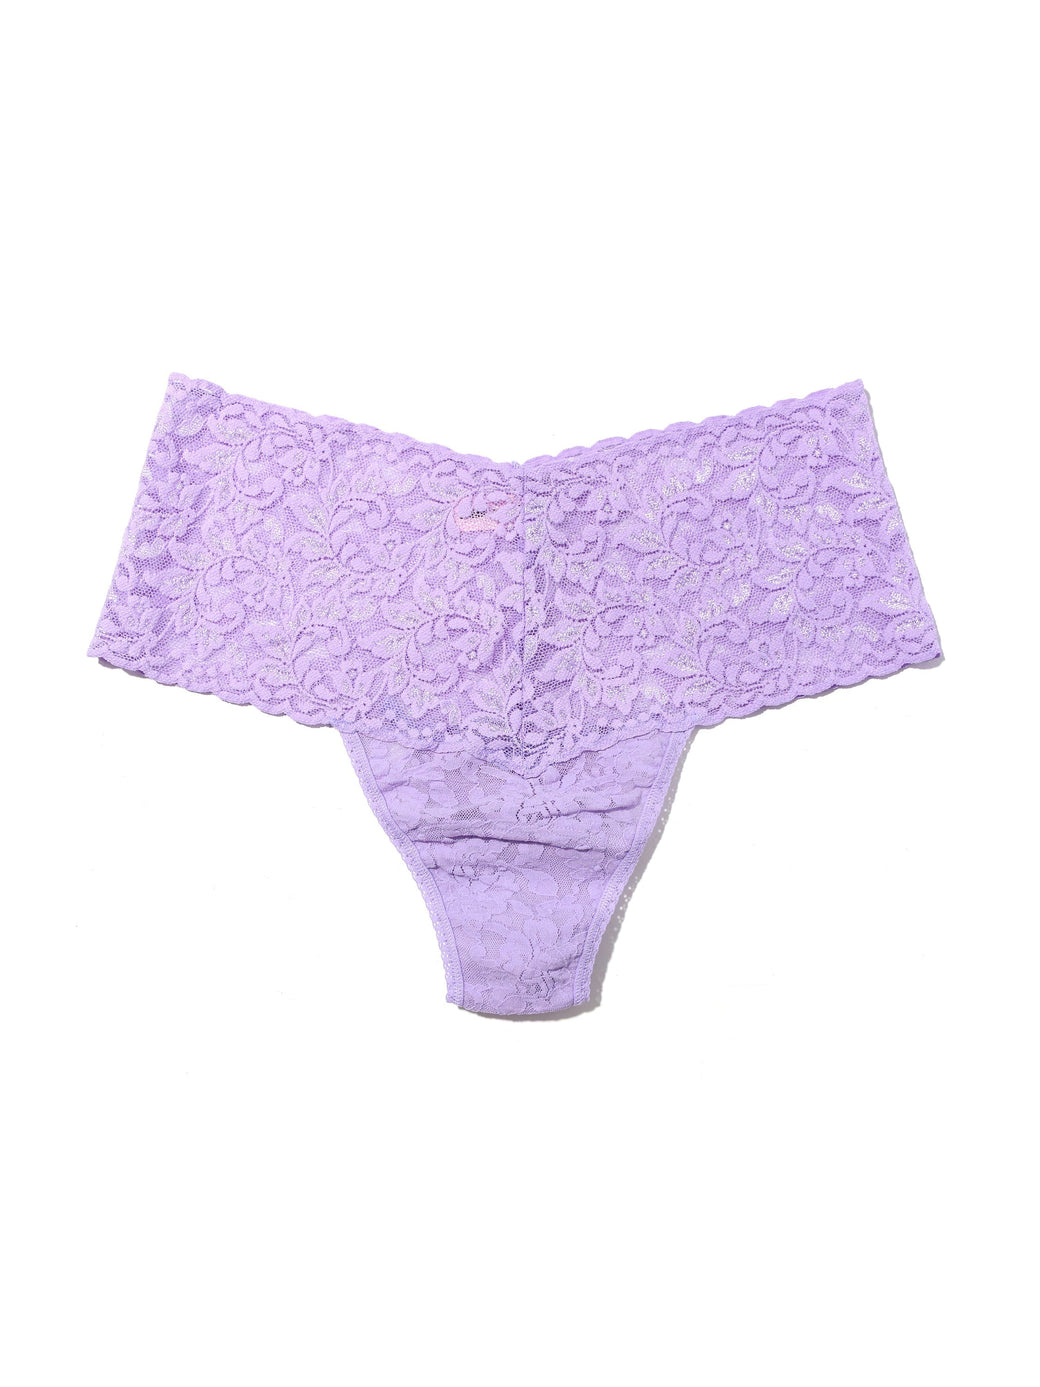 Retro Lace Thong Wisteria Purple Sale